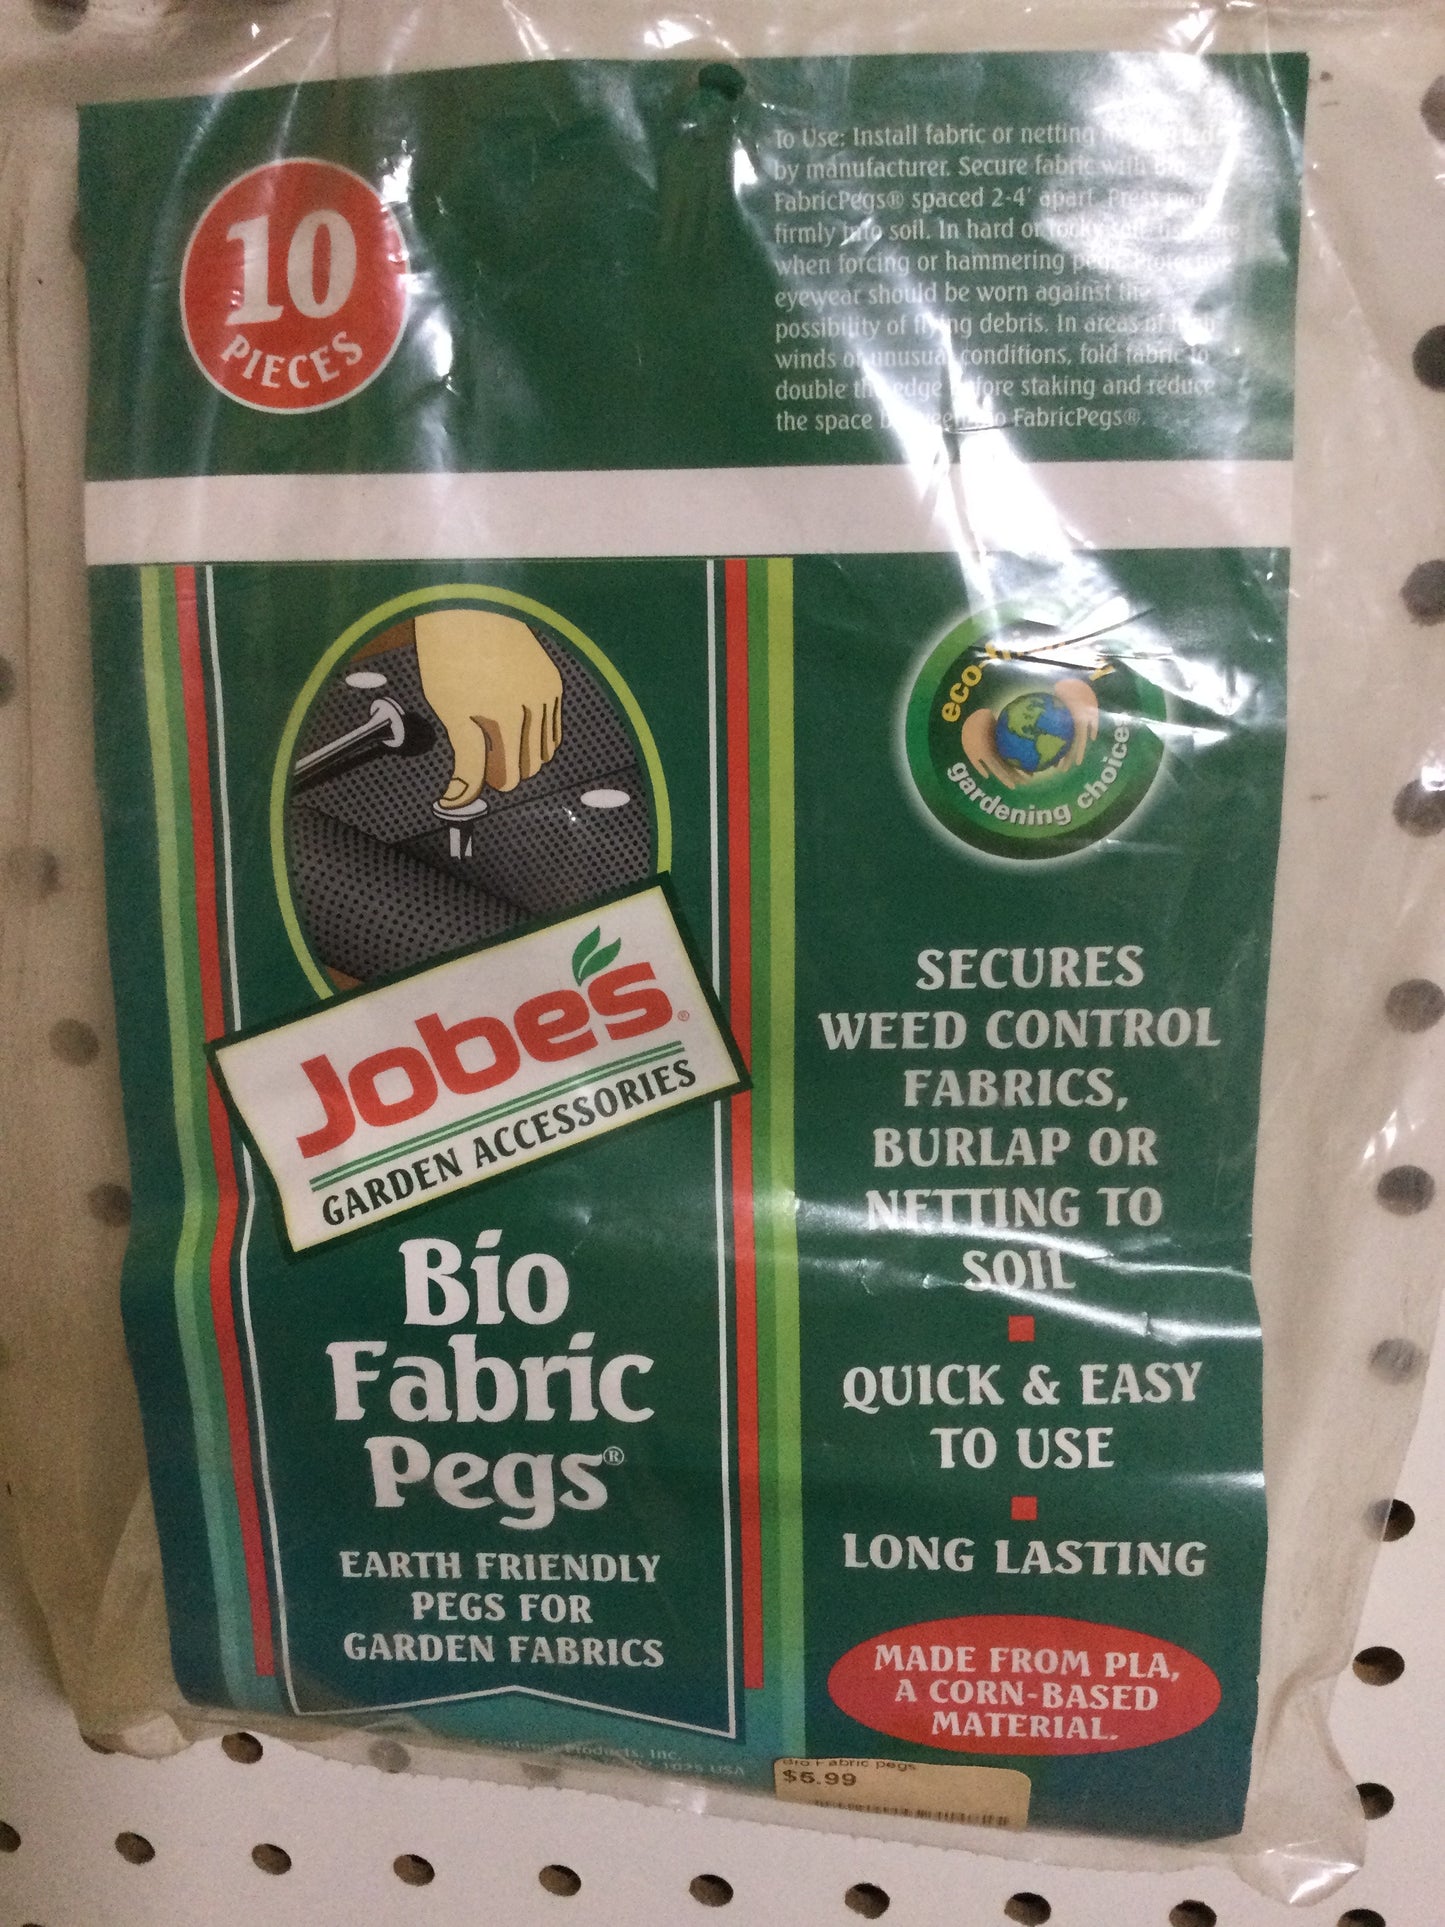 Bio Fabric pegs